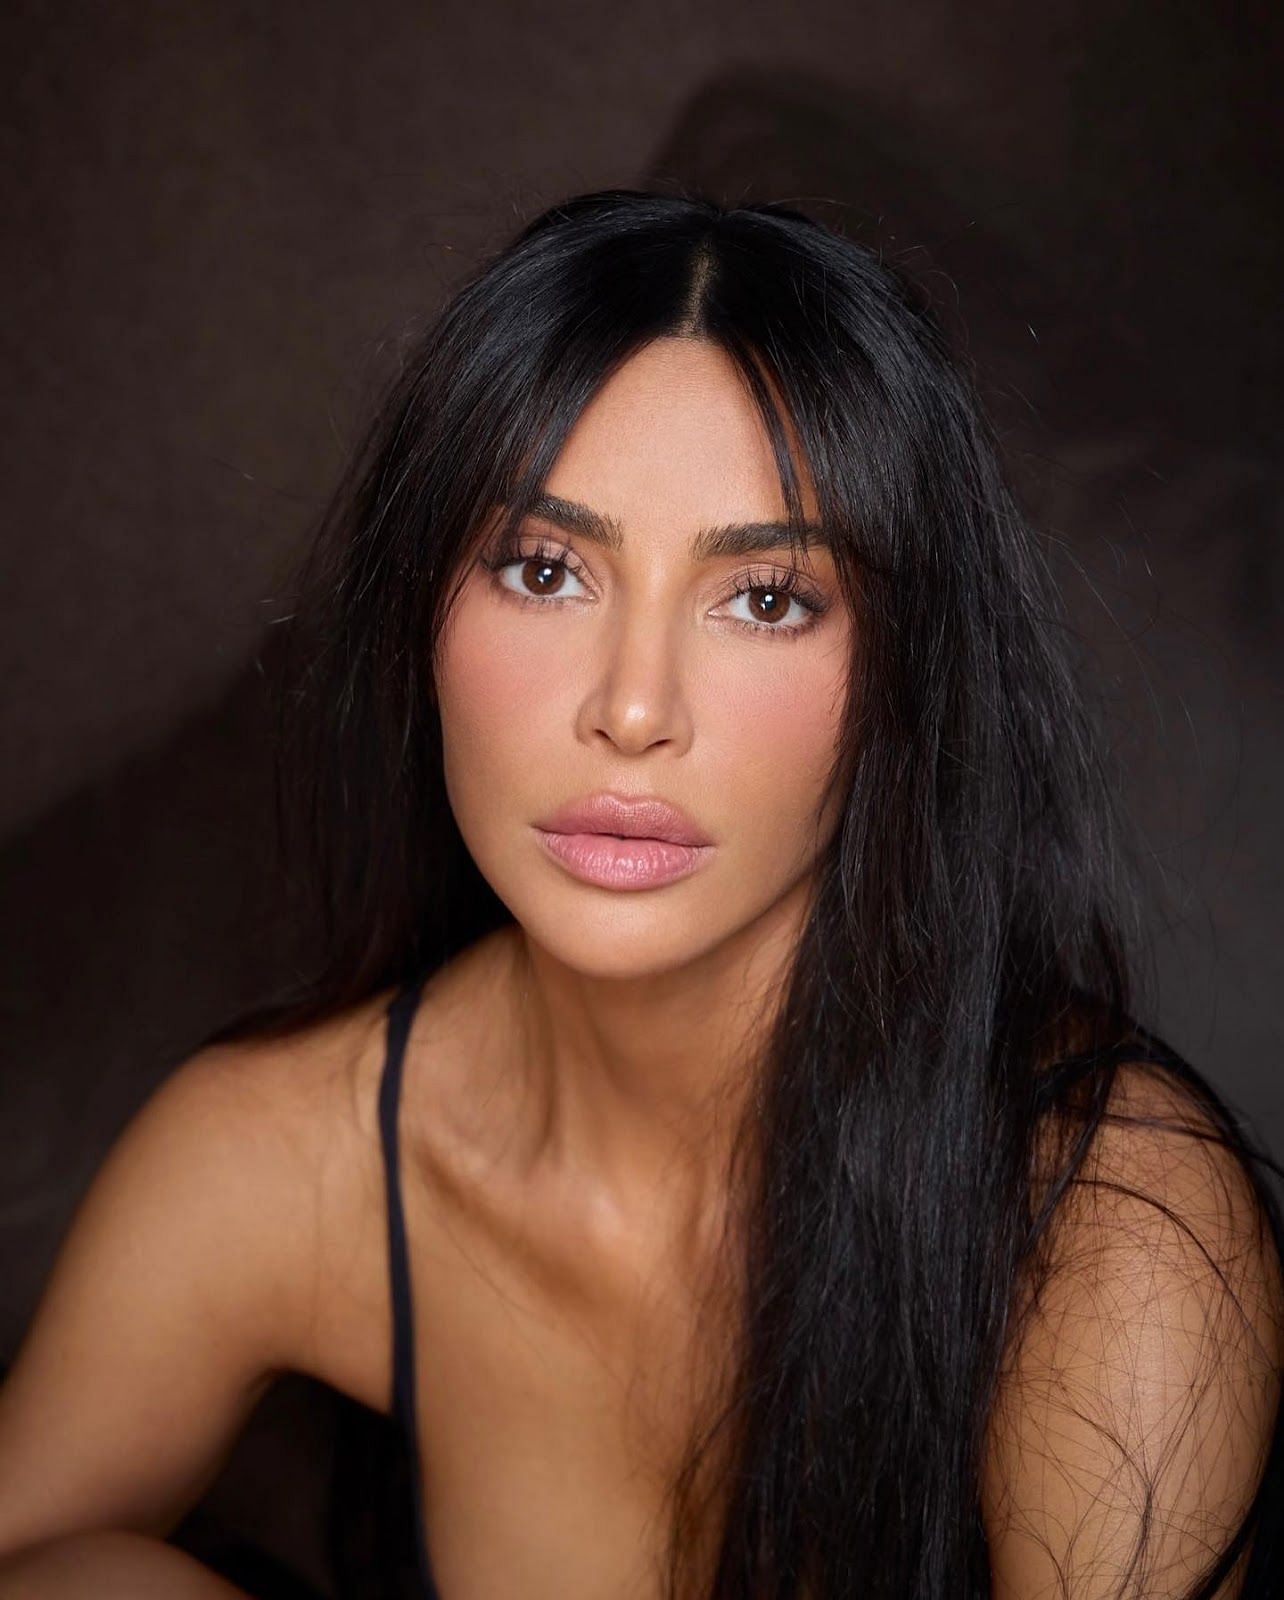 How old is Kim Kardashian?